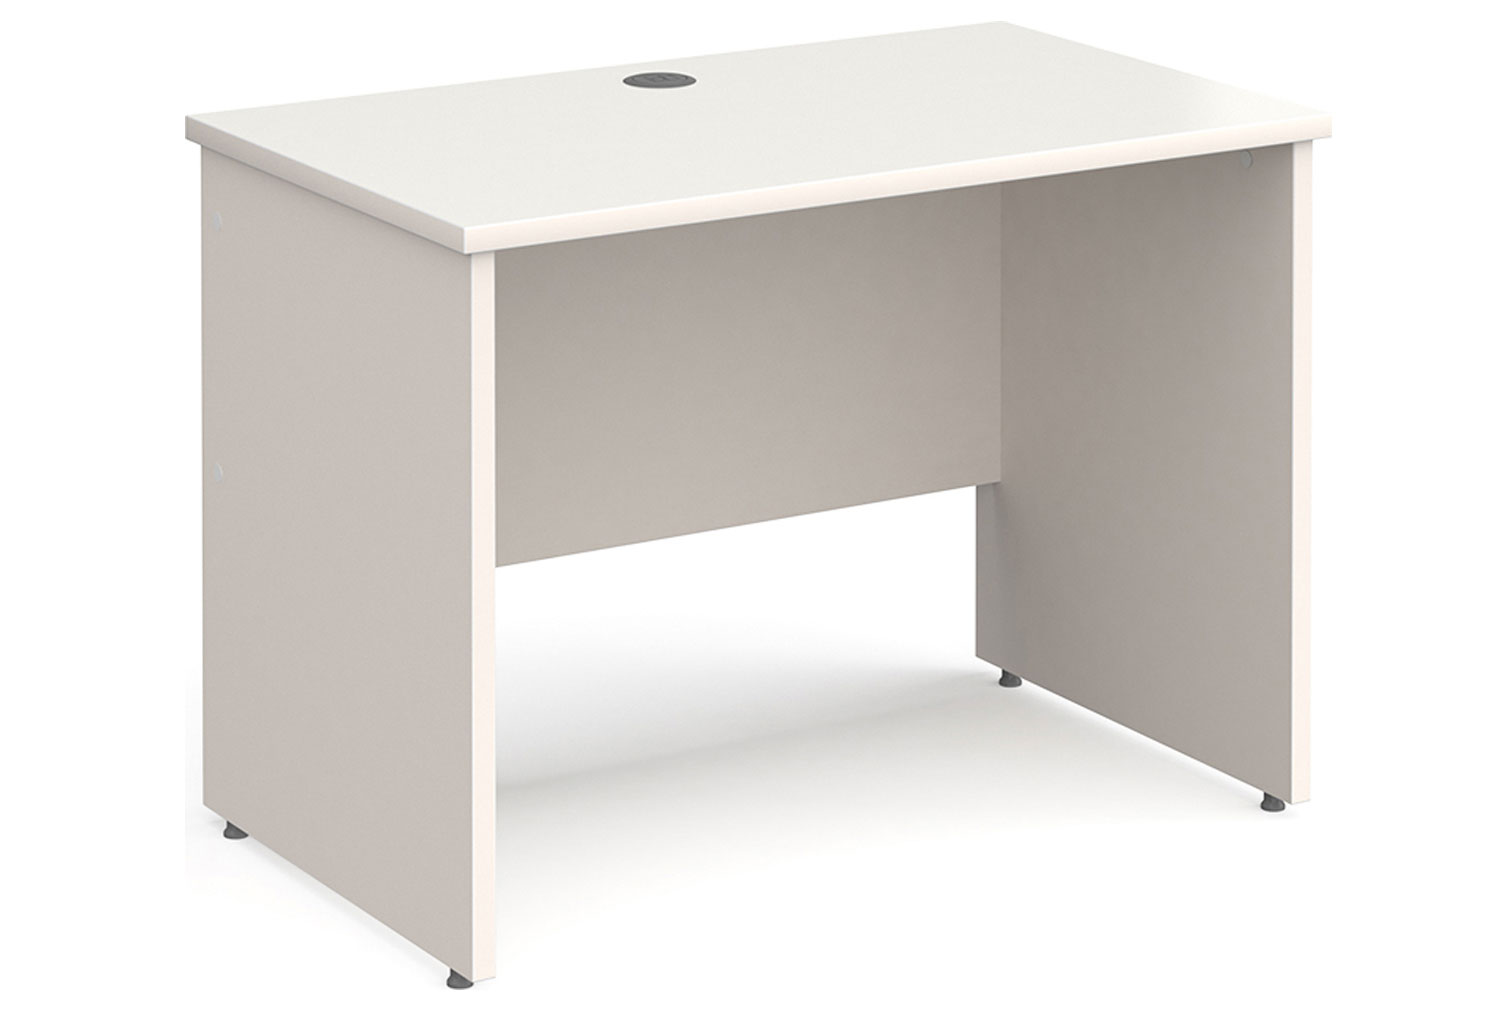 All White Panel End Narrow Rectangular Office Desk, 100wx60dx73h (cm)